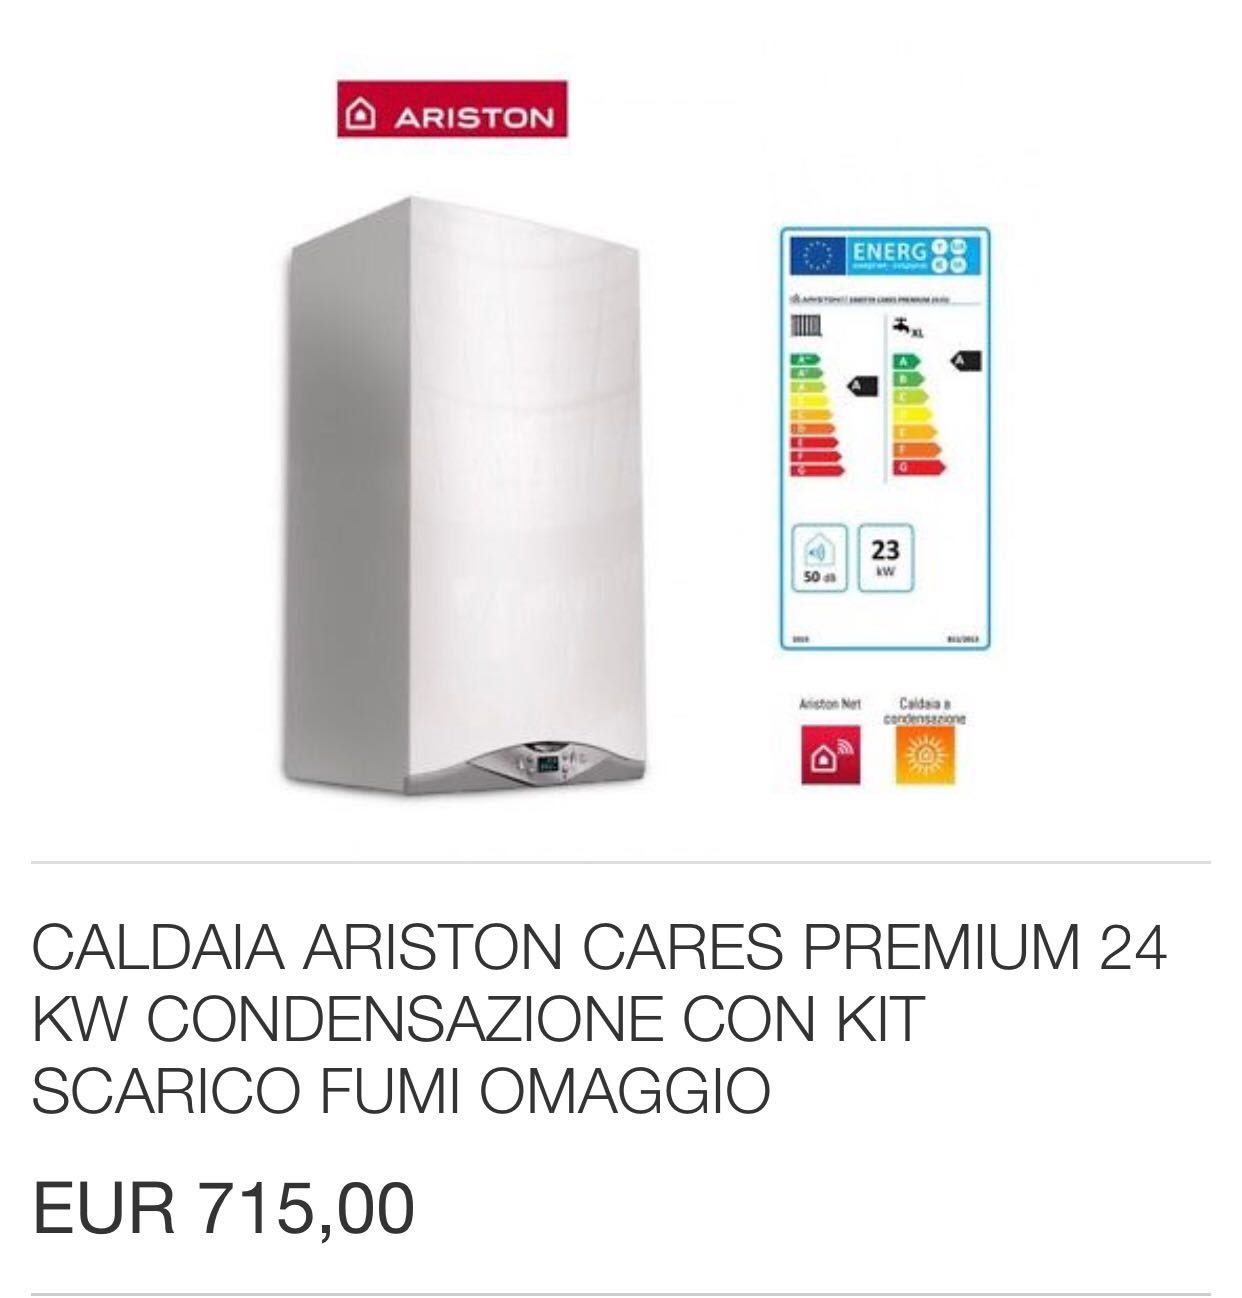 Caldaia ariston cares premium 24 kw vendita caldaie online for Caldaia a condensazione ariston clas premium 24 kw